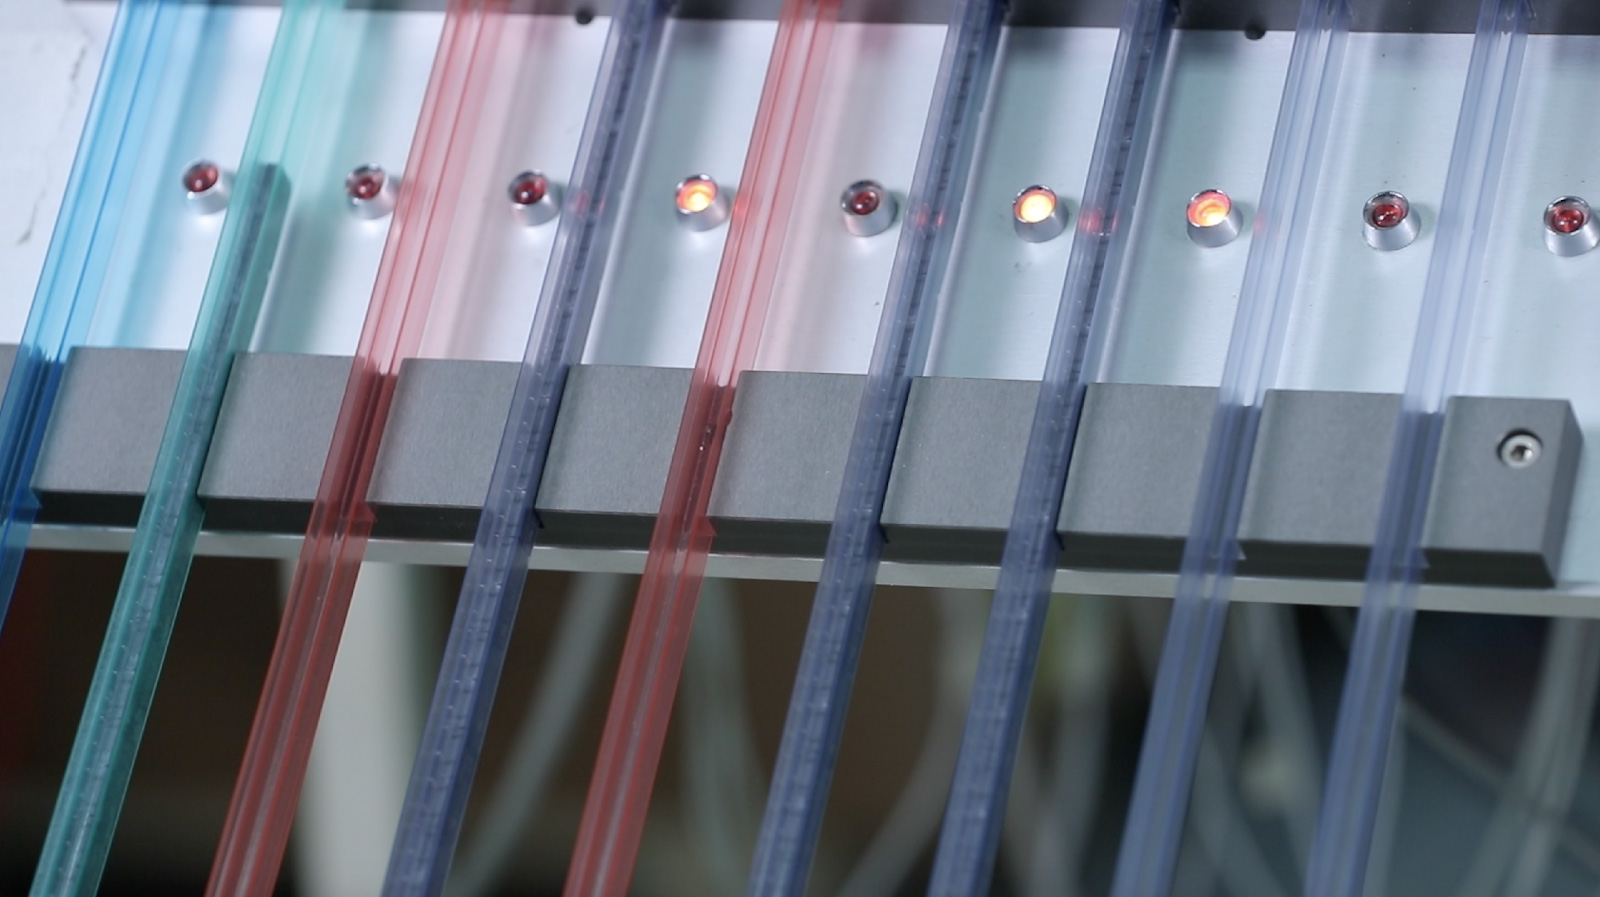 सॉलिड स्टेट रिले ट्यूबों में टेस्ट किए जाते हैं और अलग-अलग रंगों में सॉर्ट किए जाते हैं।